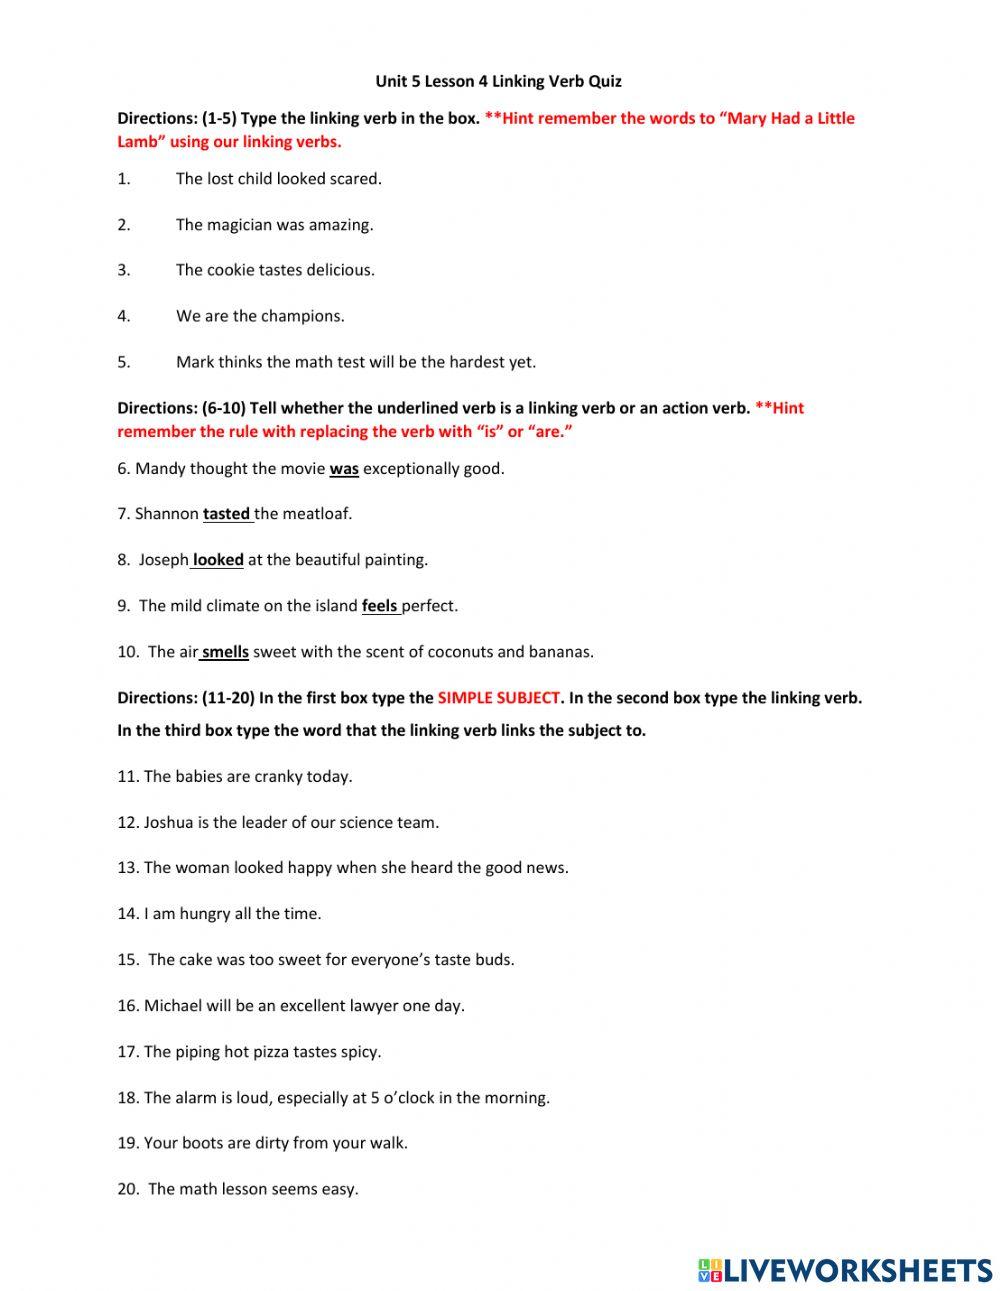 Unit 5 Lesson 4 Linking Verb Quiz